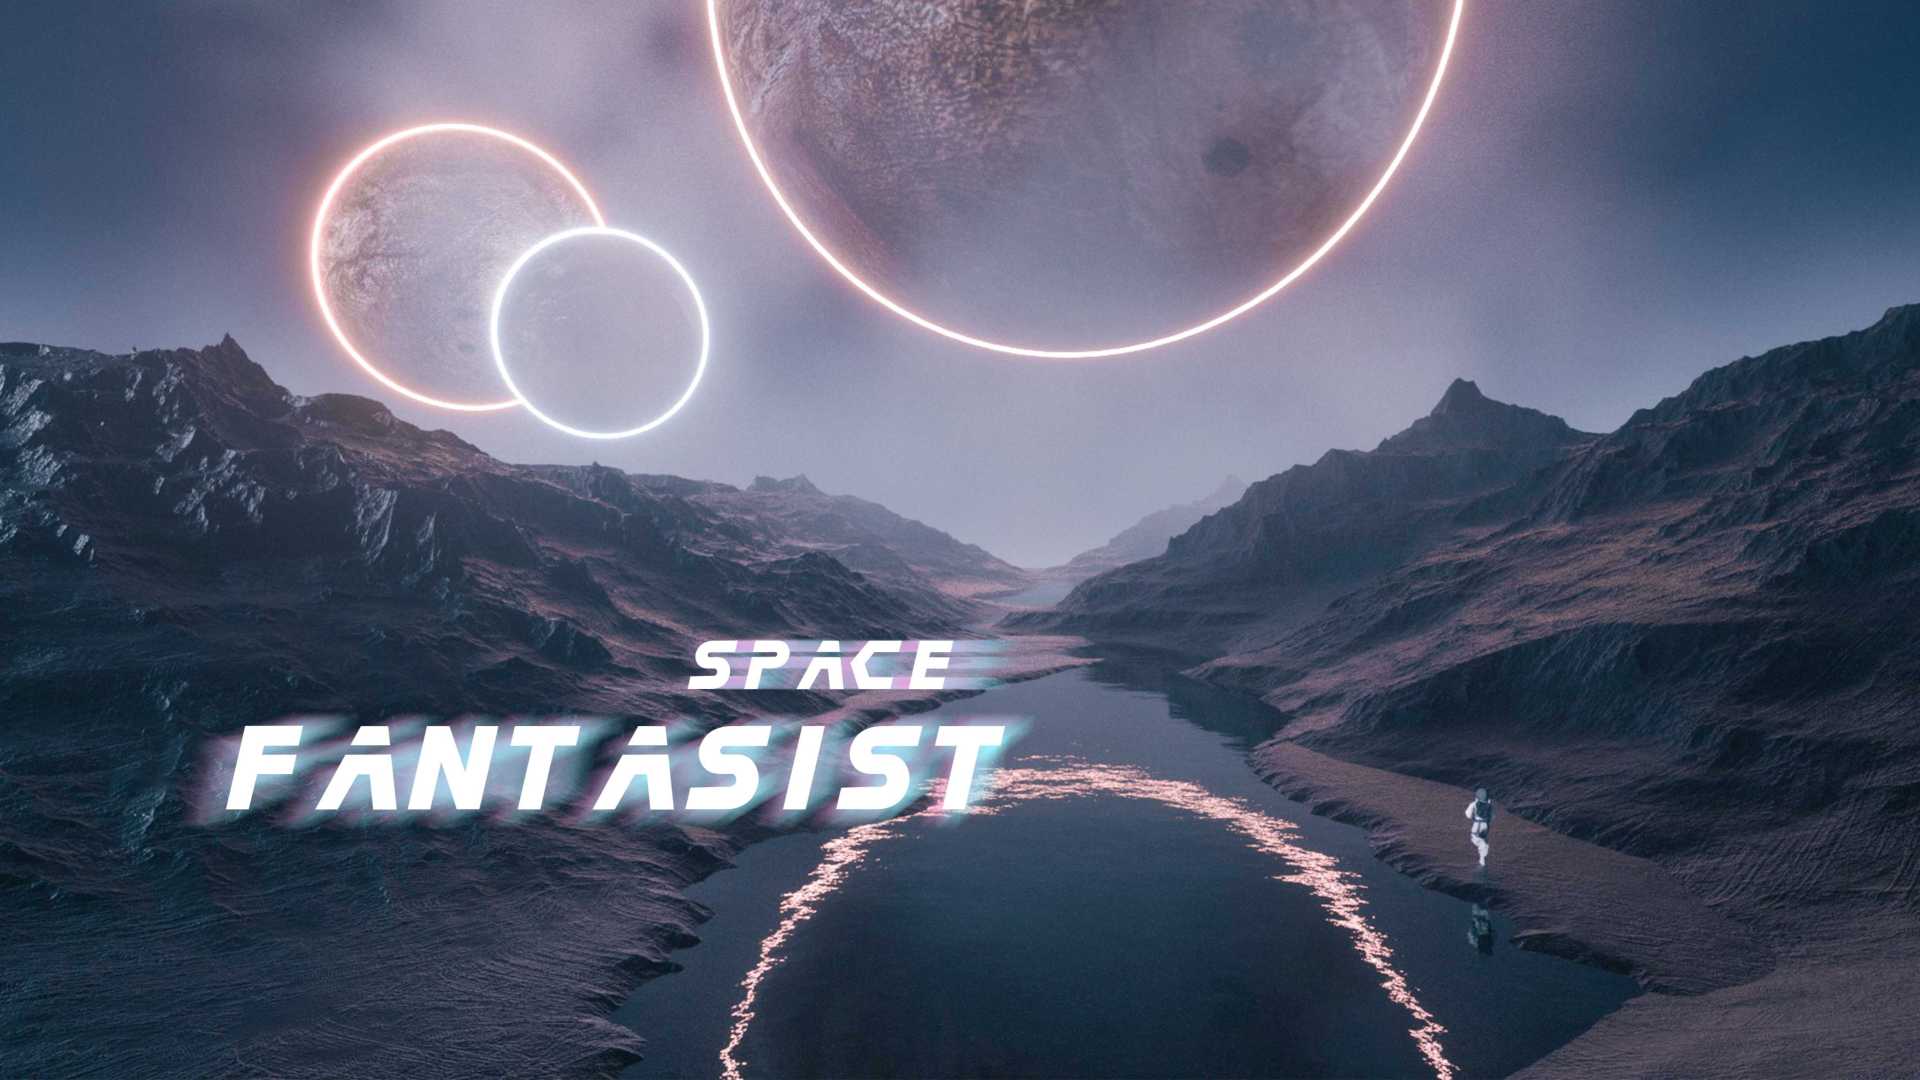 Space Fantasist 太空幻想家丨毕设作品丨首部个人三维短片